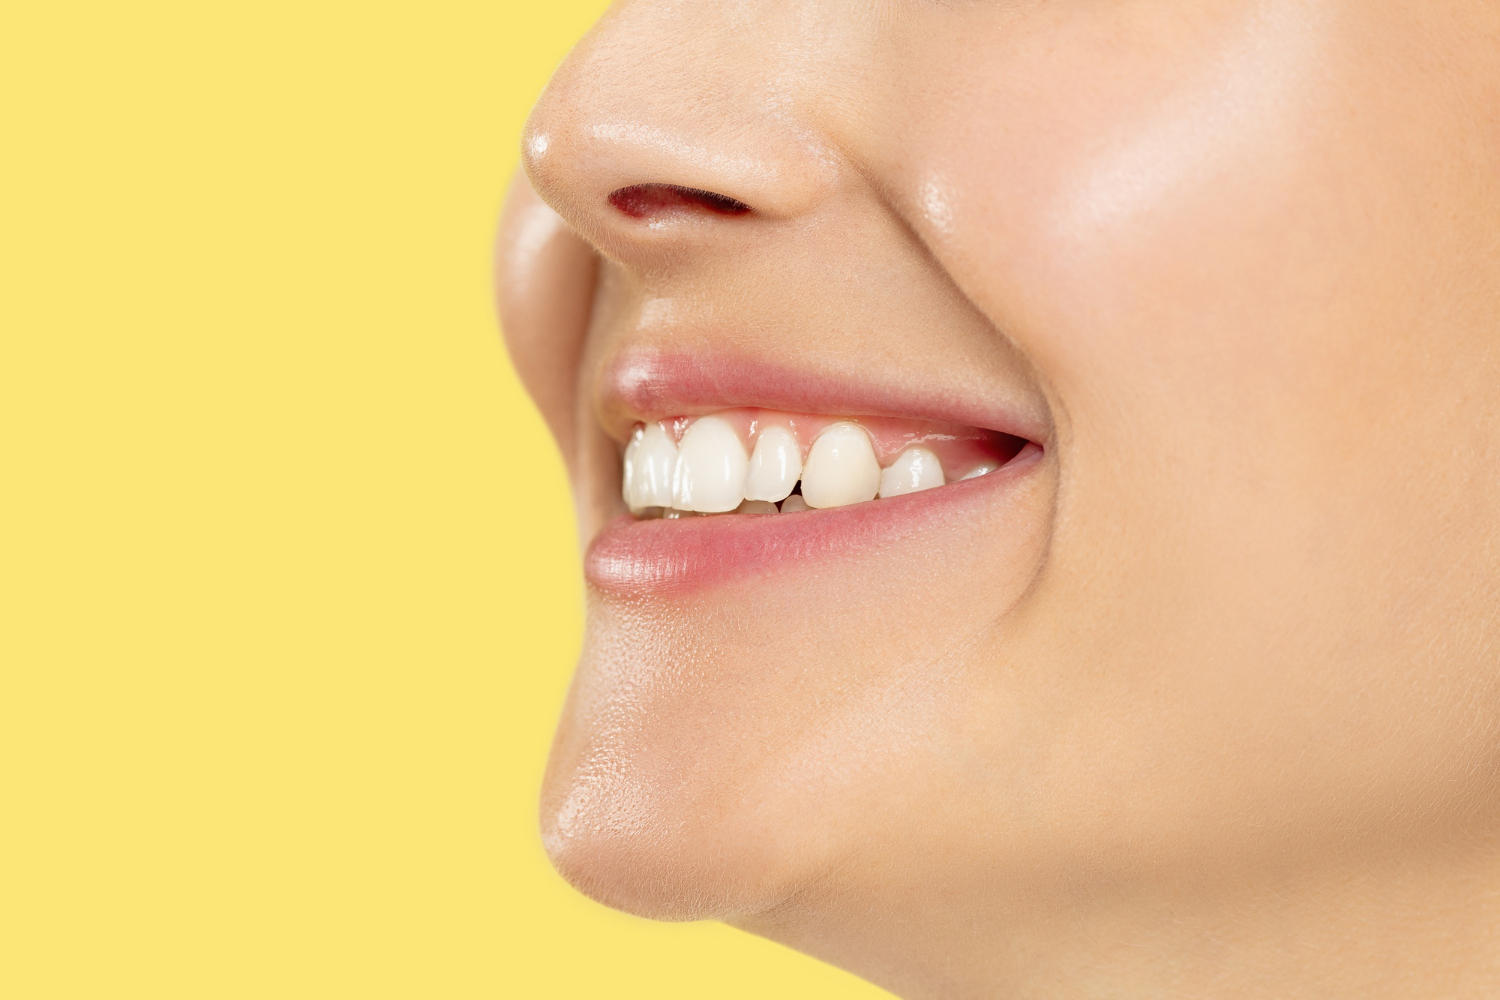 Răng sứ HT smile là một trong những dòng răng sứ cao cấp được nhiều khách hàng lựa chọn